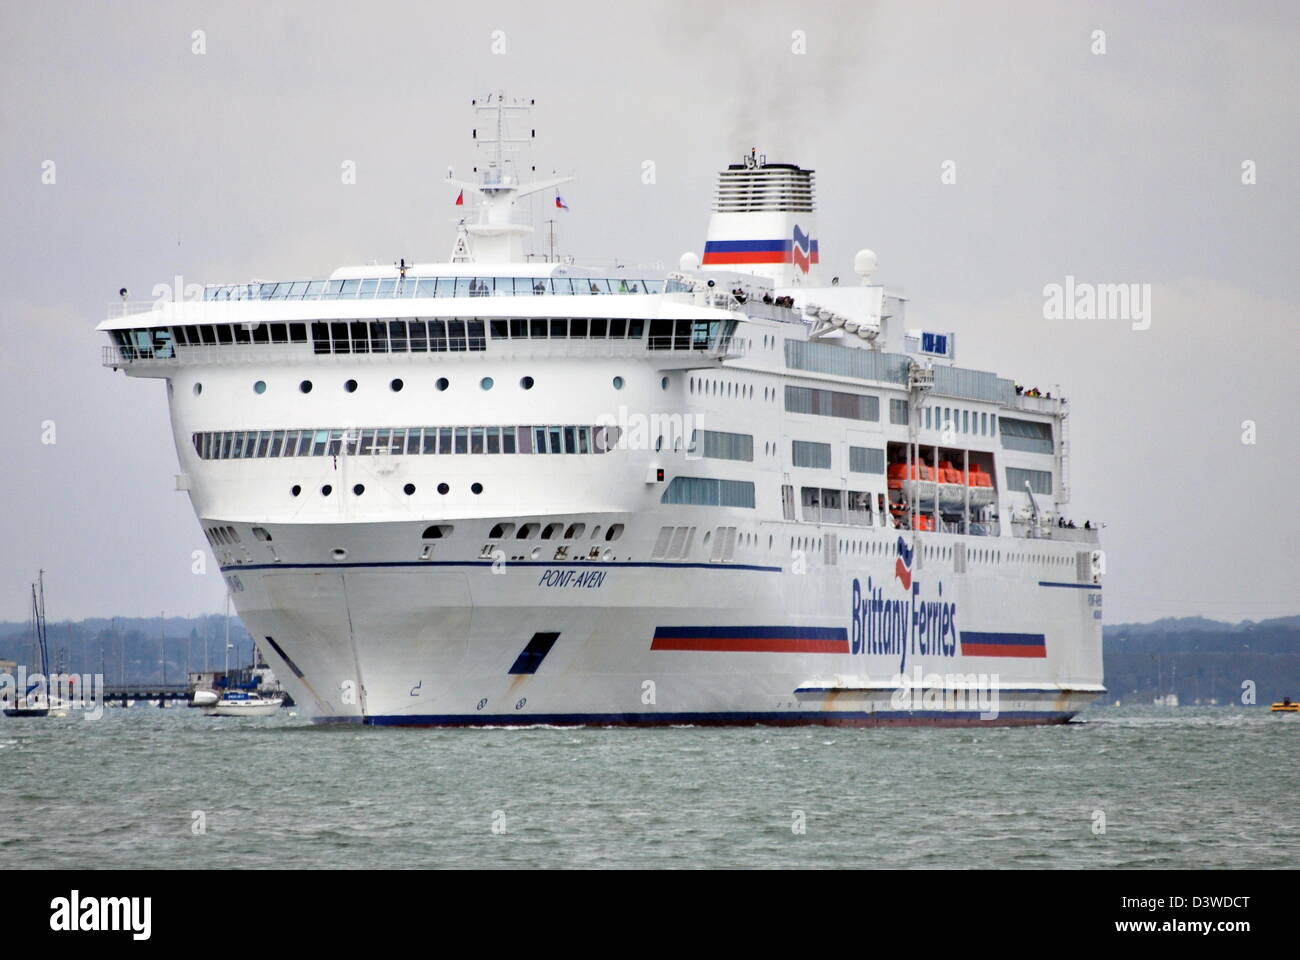 Un bateau/ferry Pont Aven départ de Portsmouth. Le navire est exploité par Brittany Ferries et est le navire amiral de la flotte. Banque D'Images